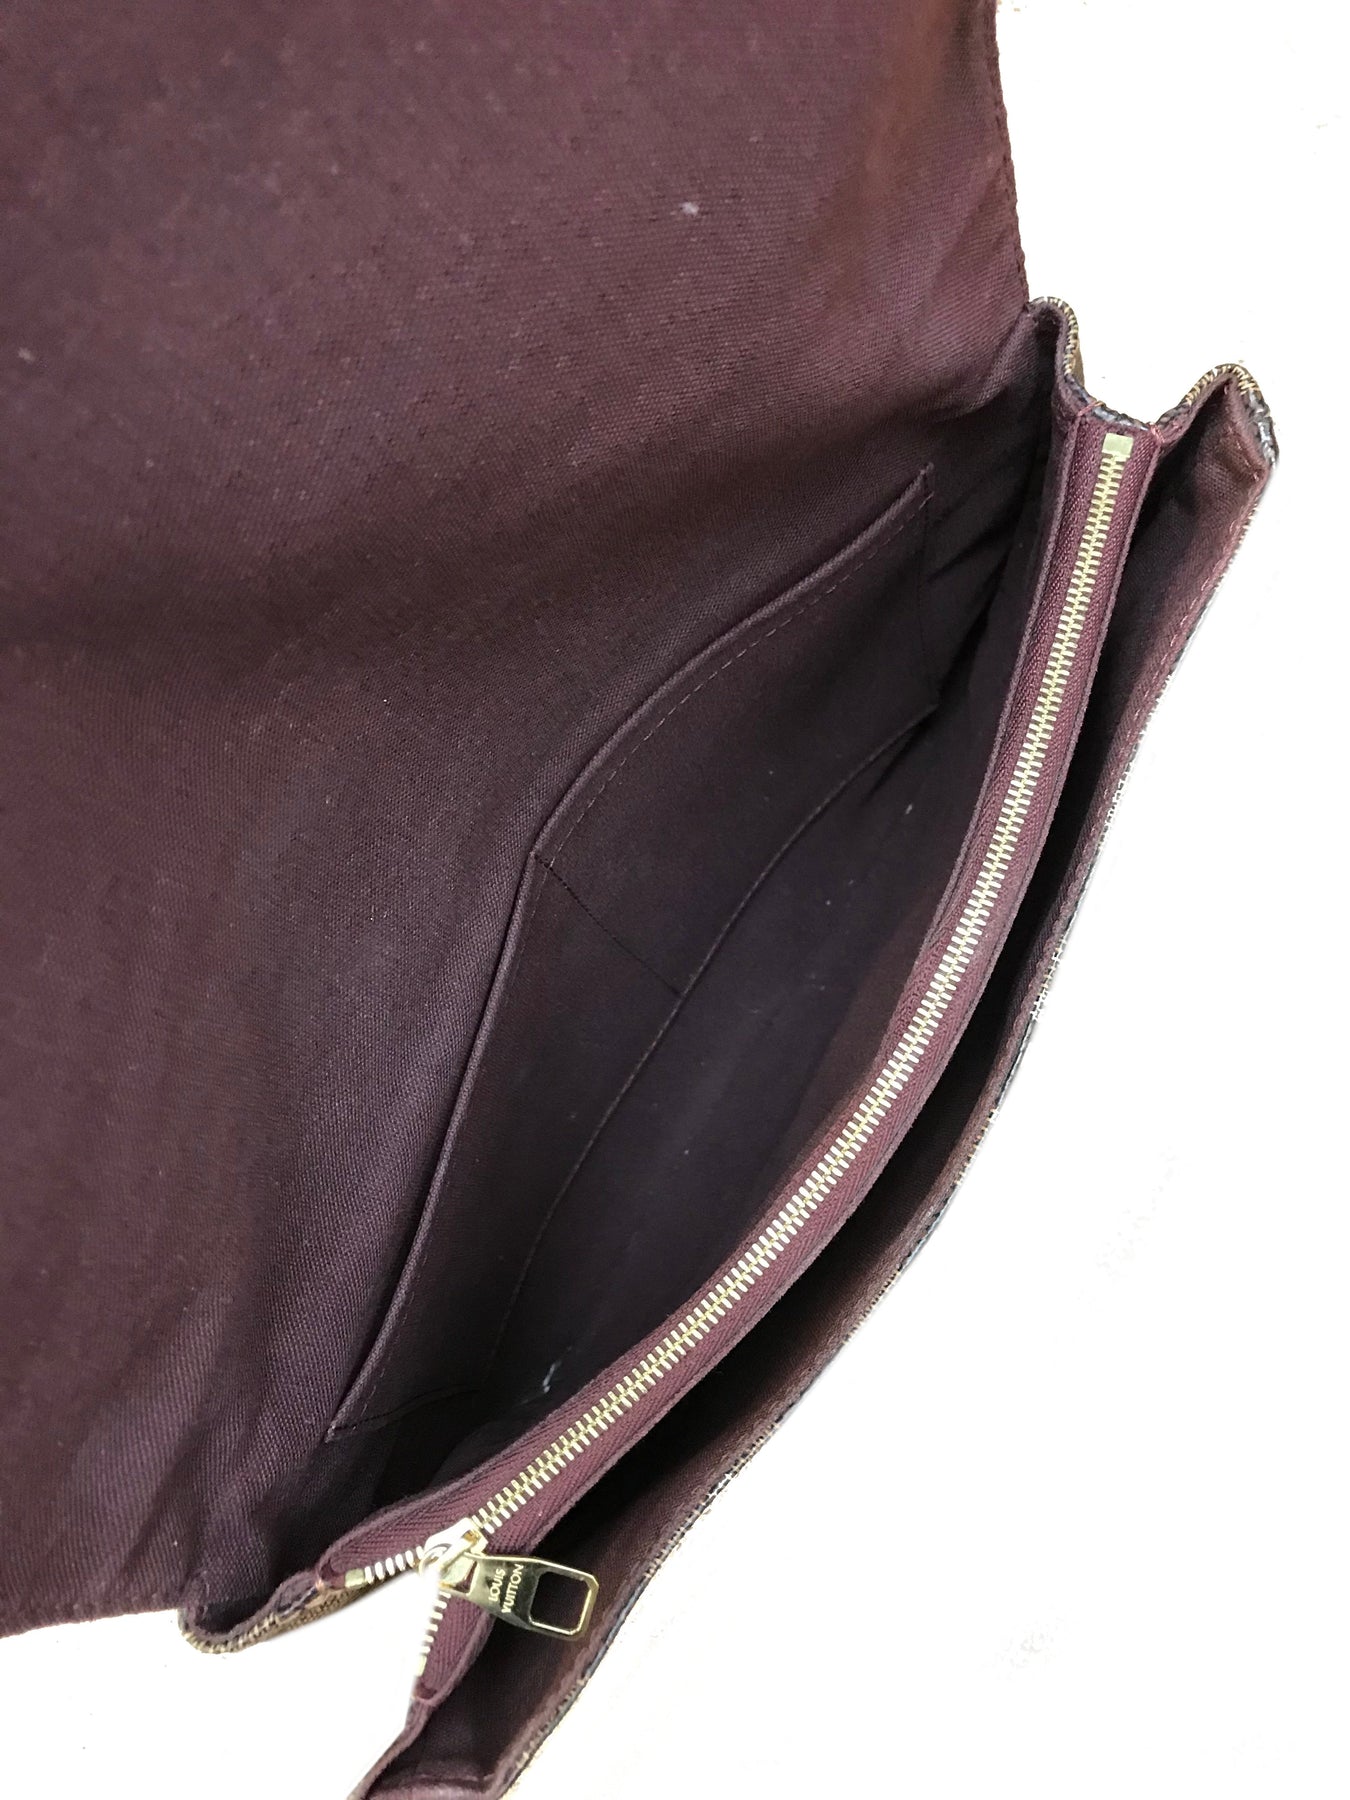 Authentic LOUIS VUITTON Damier Hoxton GM N41253 Shoulder bag #260